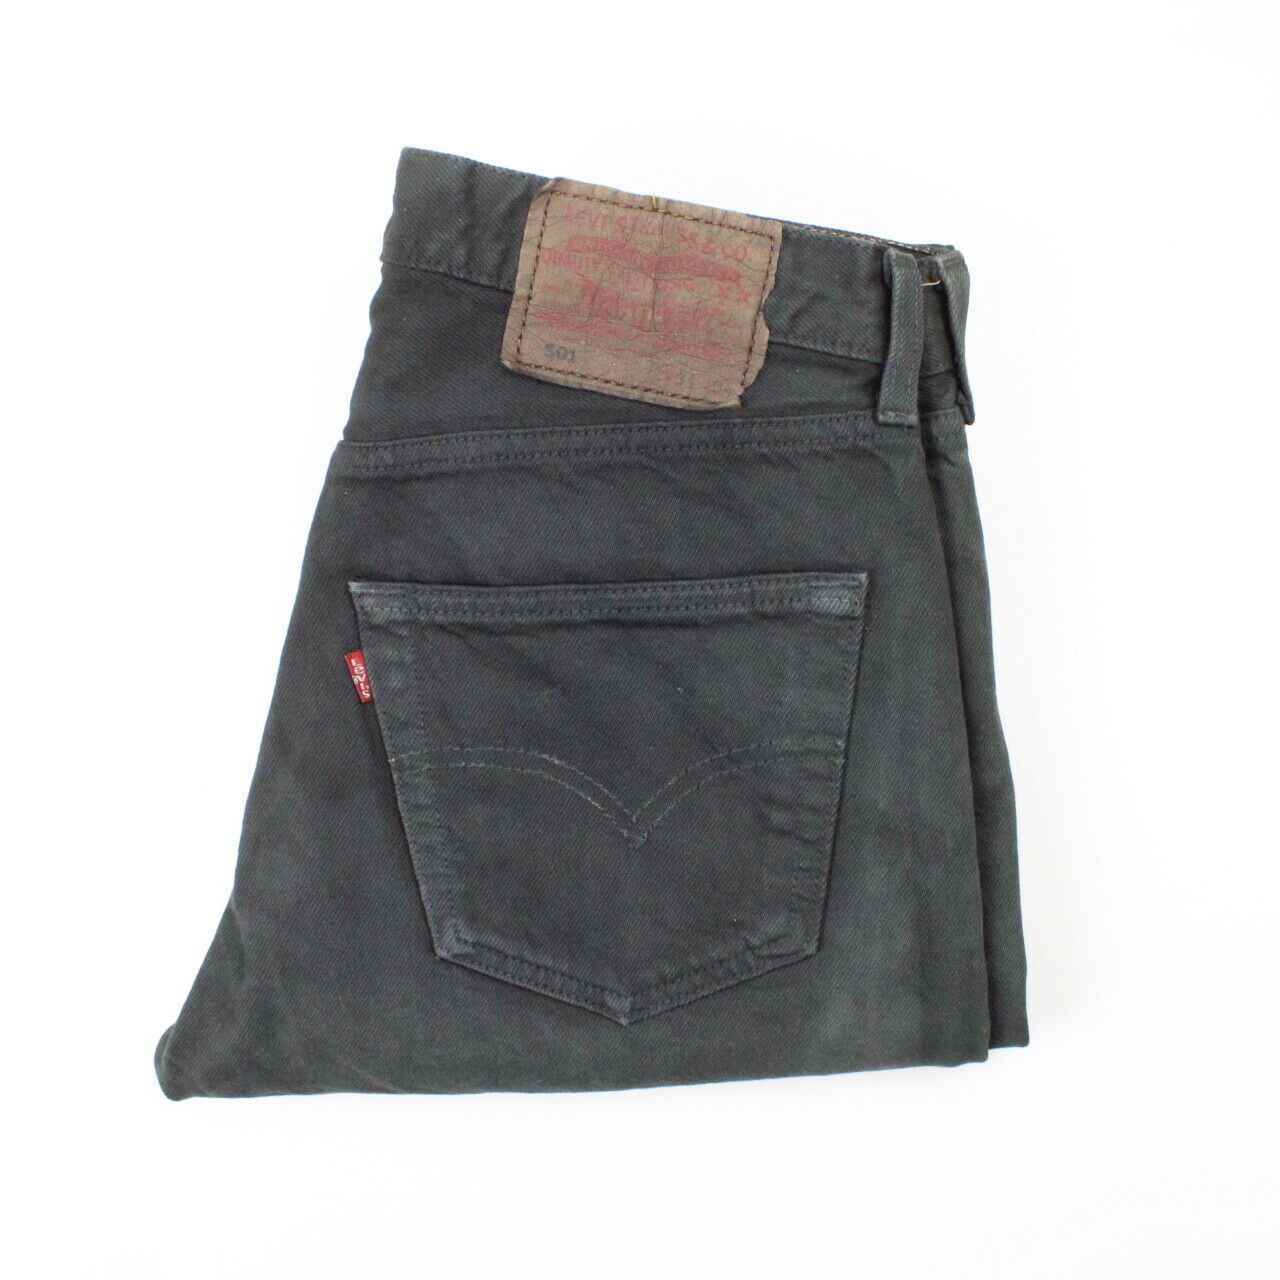 LEVIS 501 Jeans Black | W30 L34